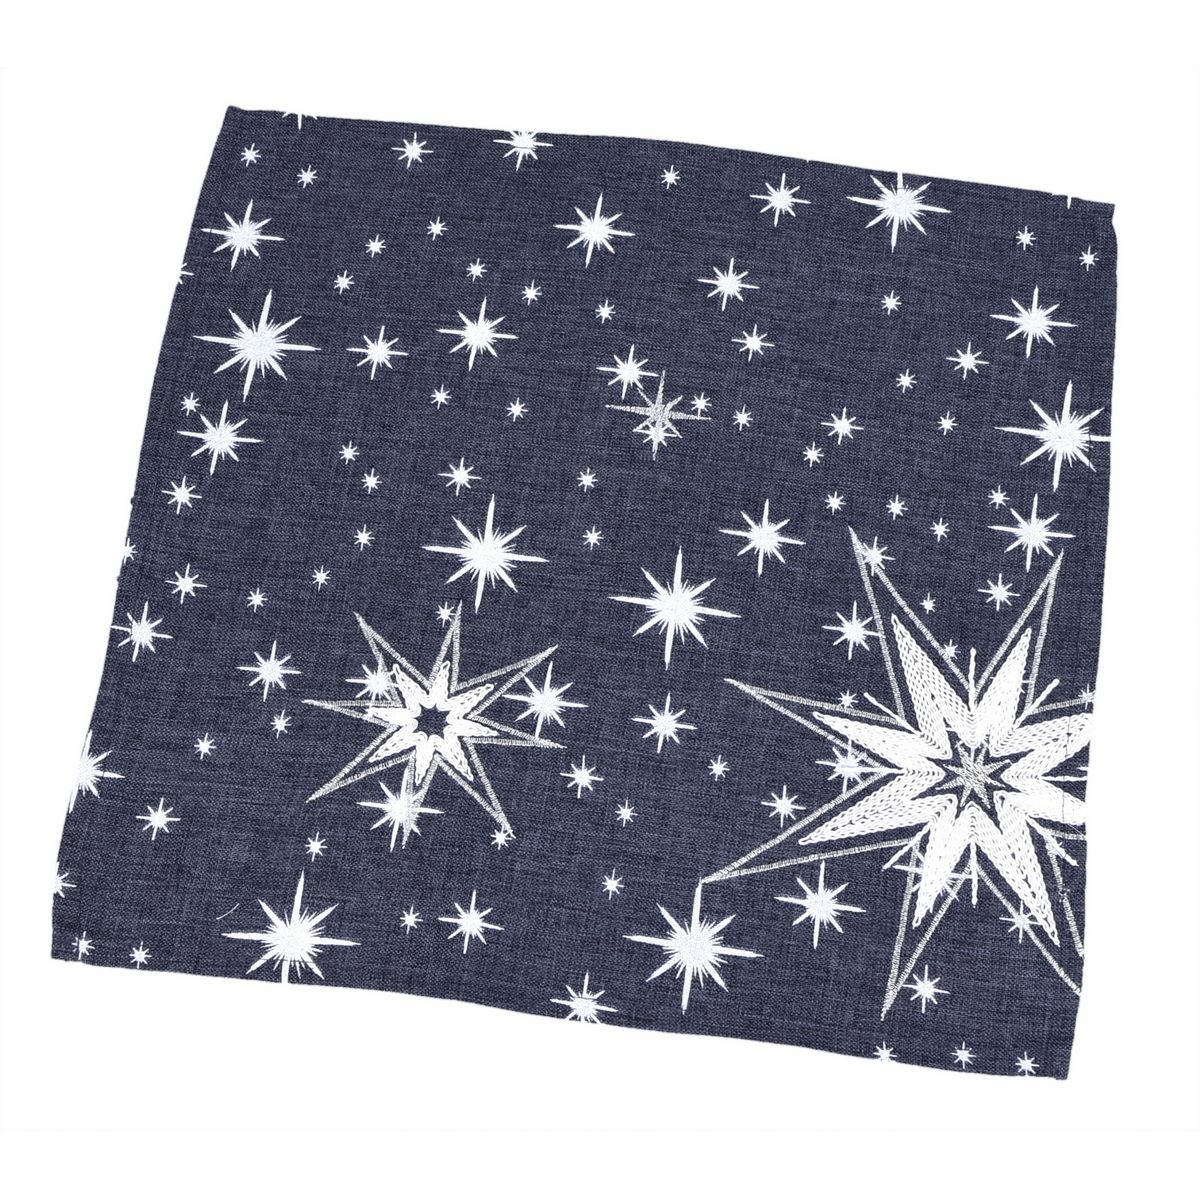 Świąteczny obrus Gwiazdy szary, 35 x 35 cm, 35 x 35 cm